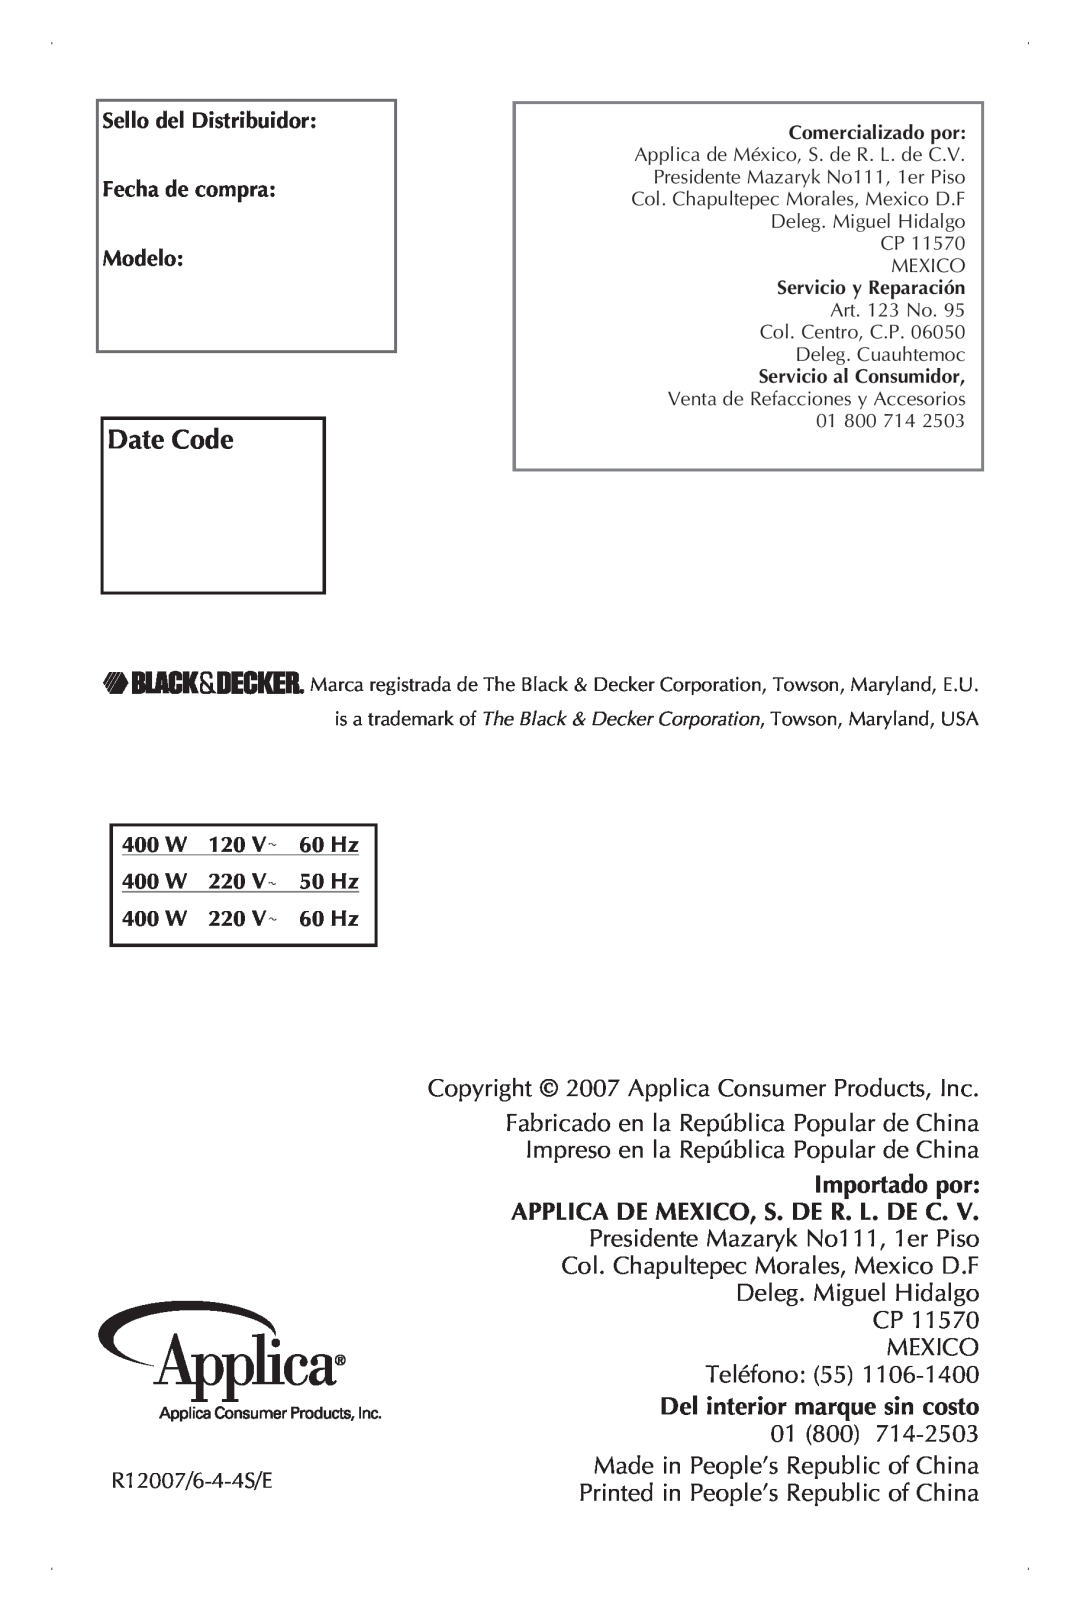 Black & Decker JE2001 manual Date Code, Importado por, Applica De Mexico, S. De R. L. De C, Del interior marque sin costo 